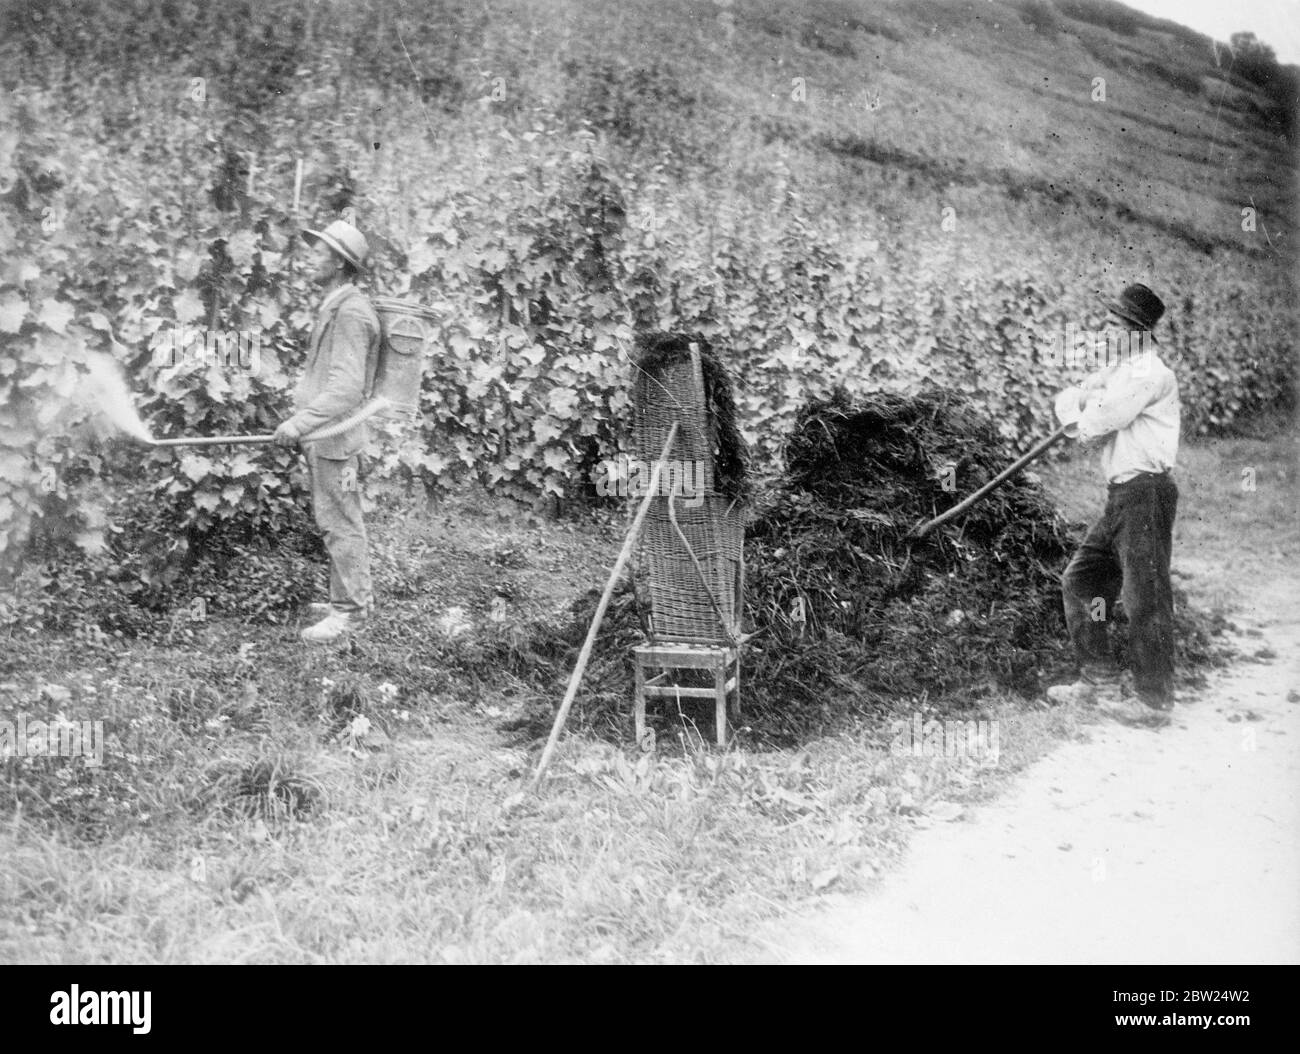 Travailleurs du vignoble sur les rives de la Moselle, Luxembourg. Septembre 1938 Banque D'Images